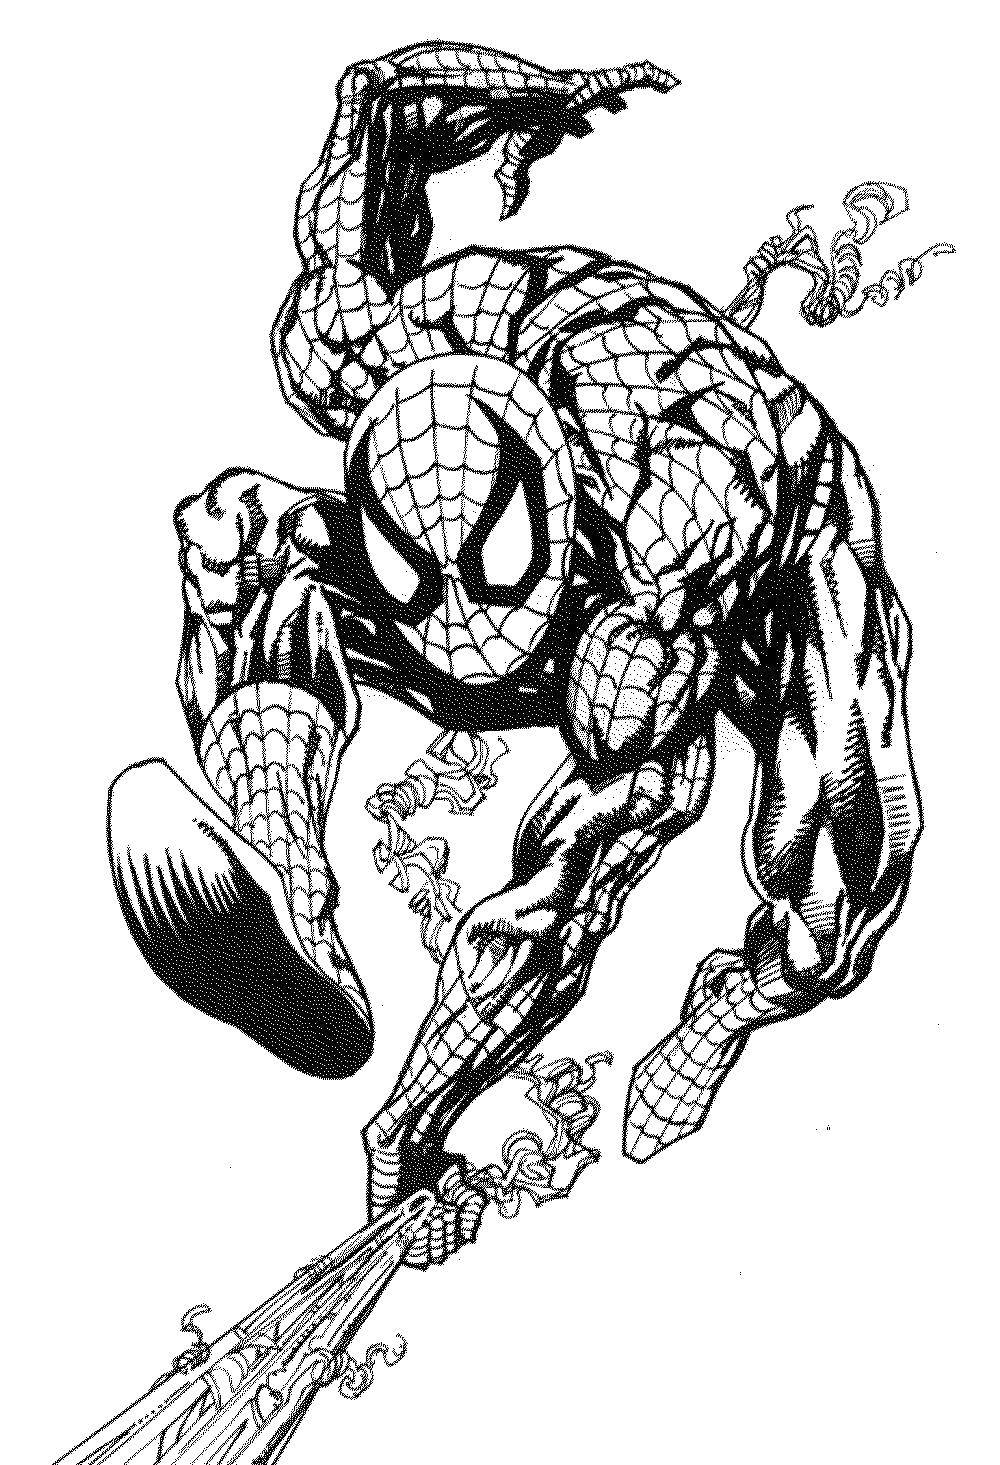 Название: Раскраска Человек паук выпускает паутину. Категория: Комиксы. Теги: Комиксы, Спайдермэн, Человек Паук.